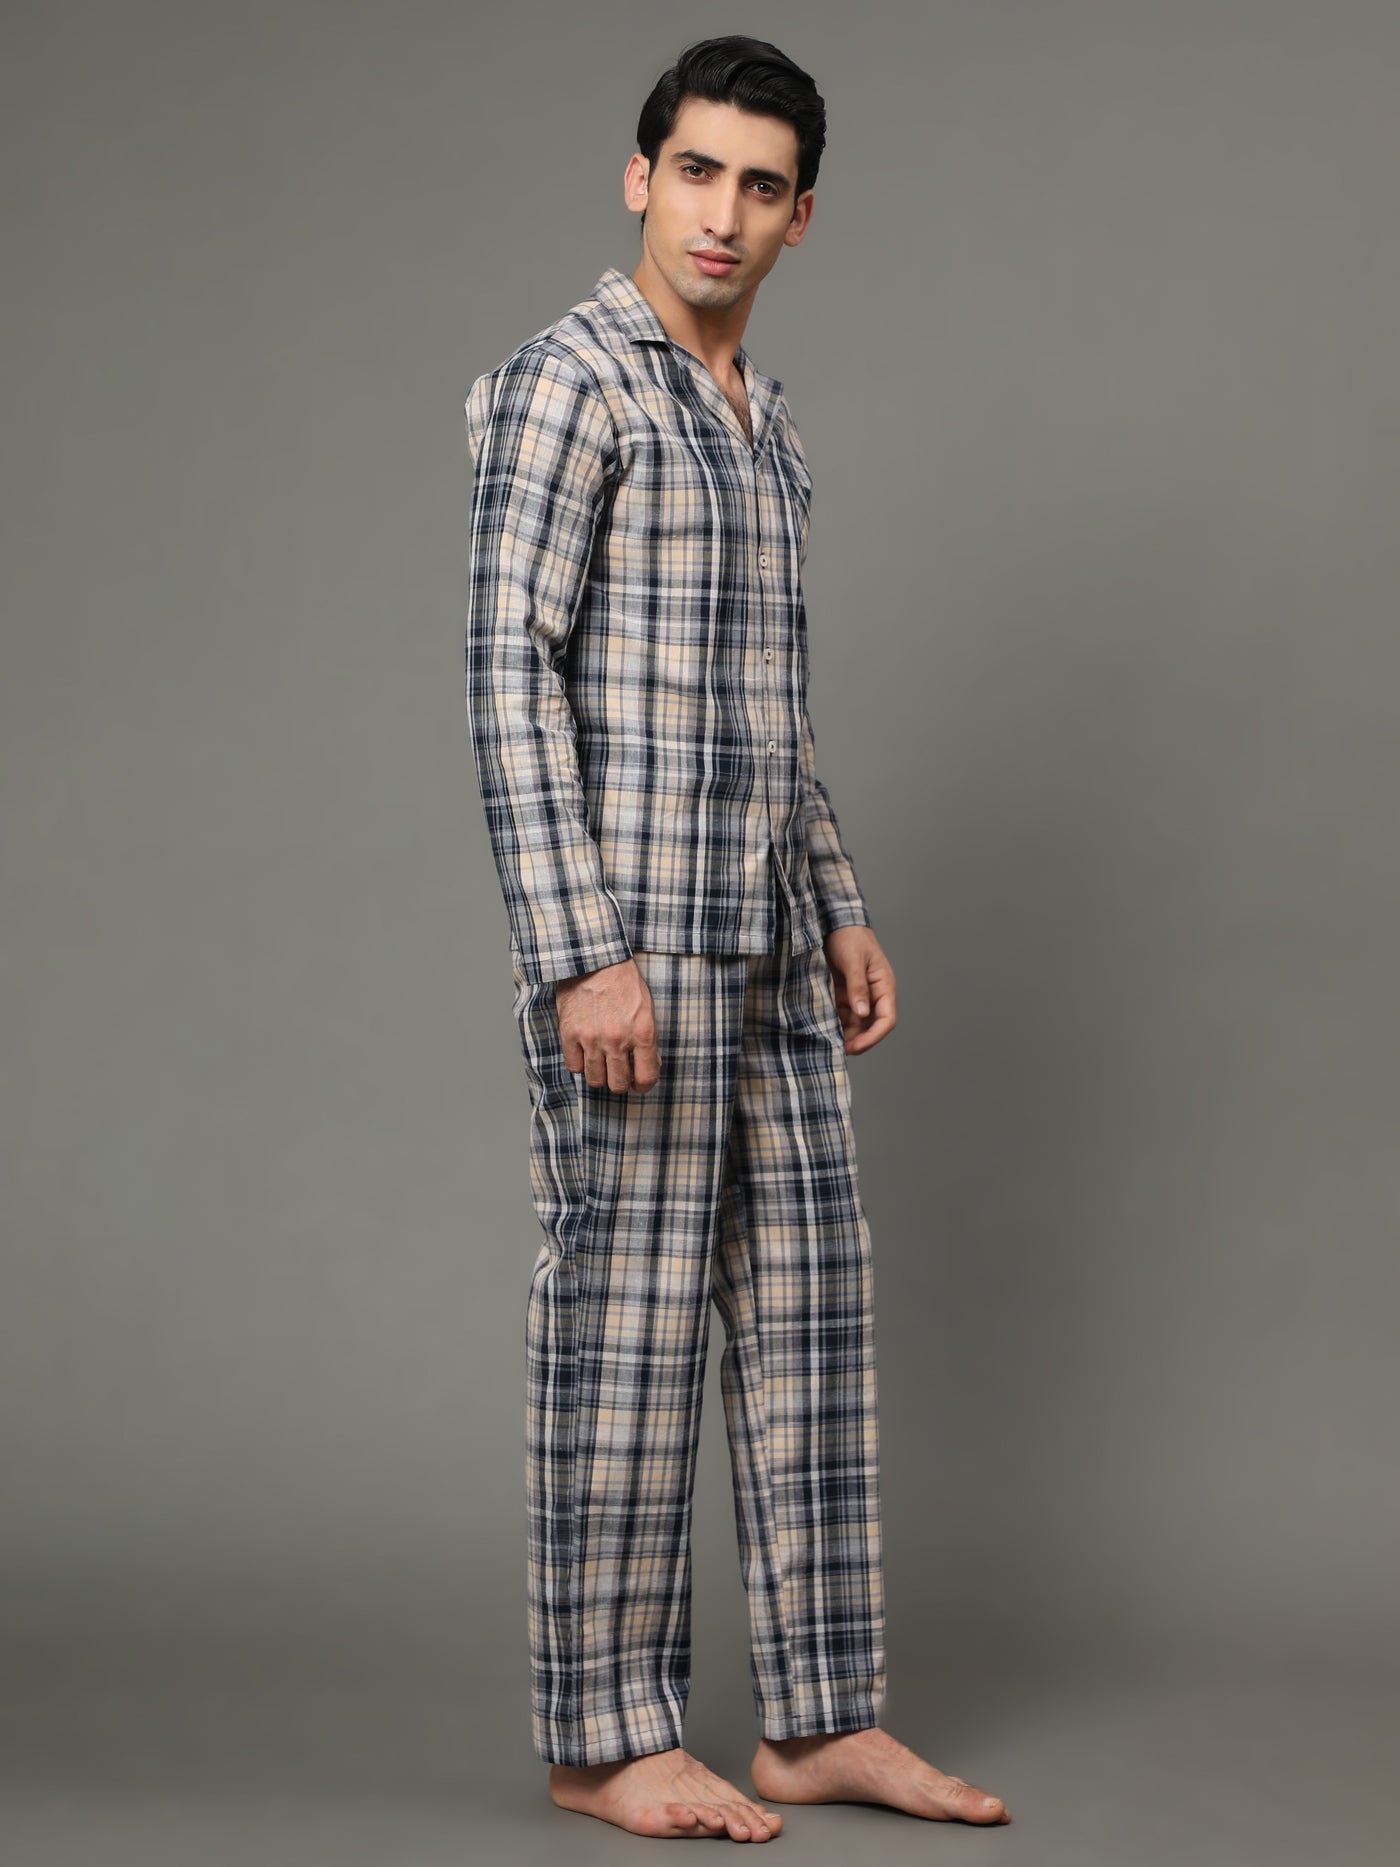 Pyjama Set for Men-Blue Checked